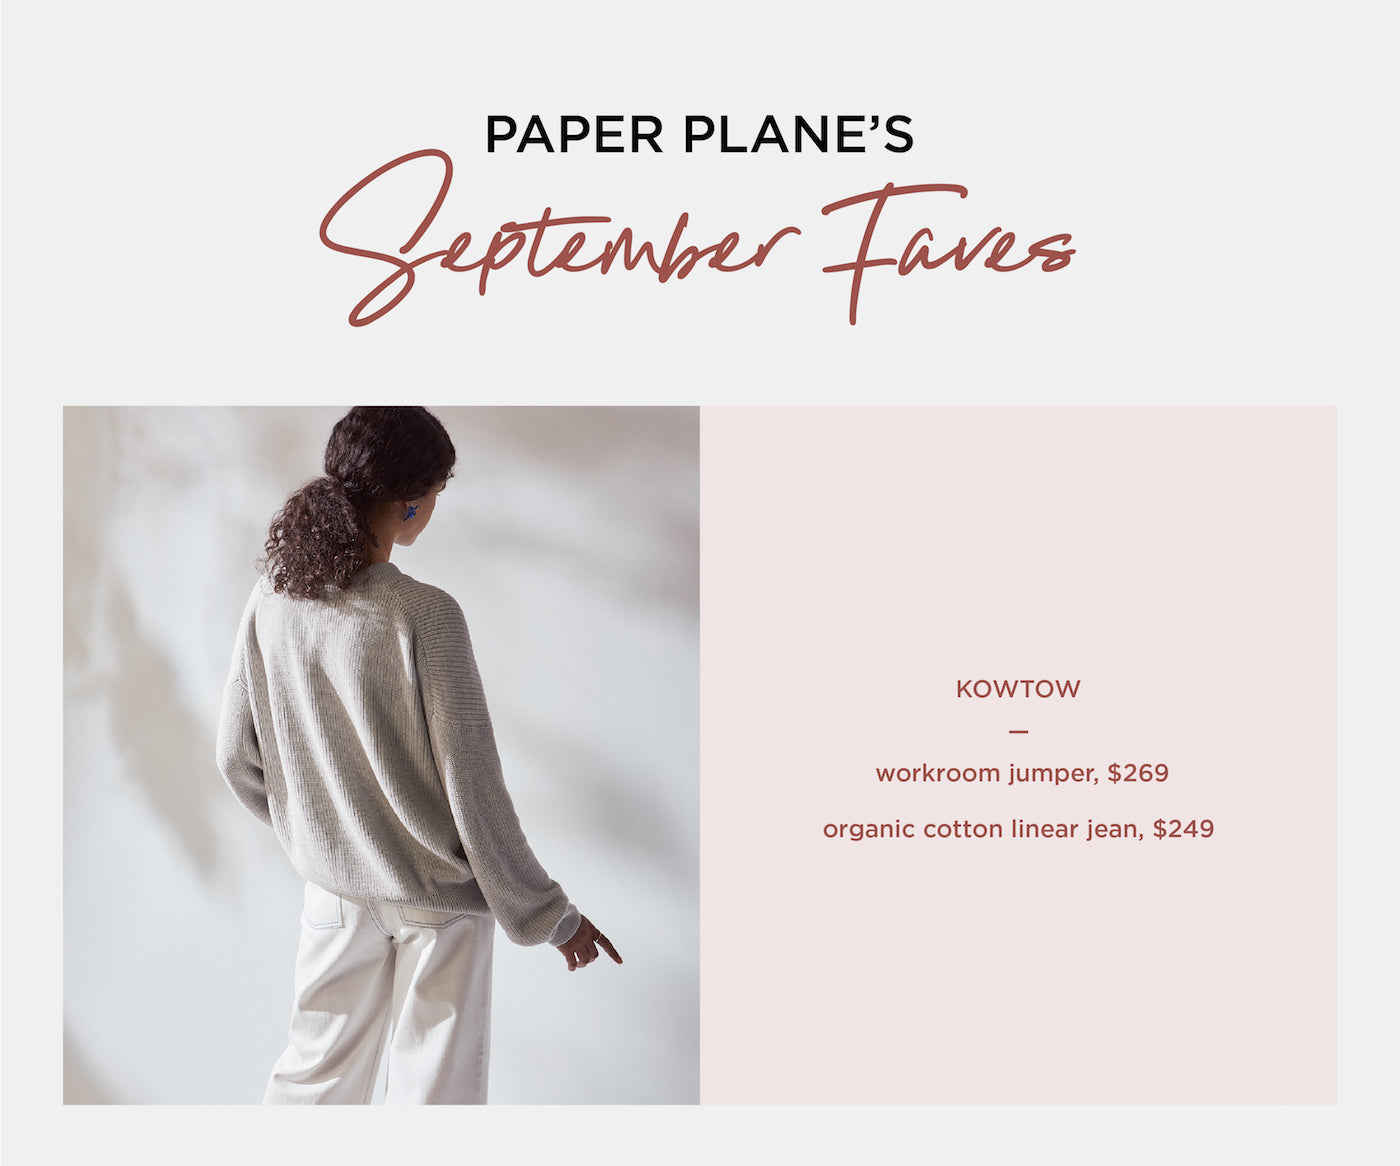 Paper Plane's September Faves